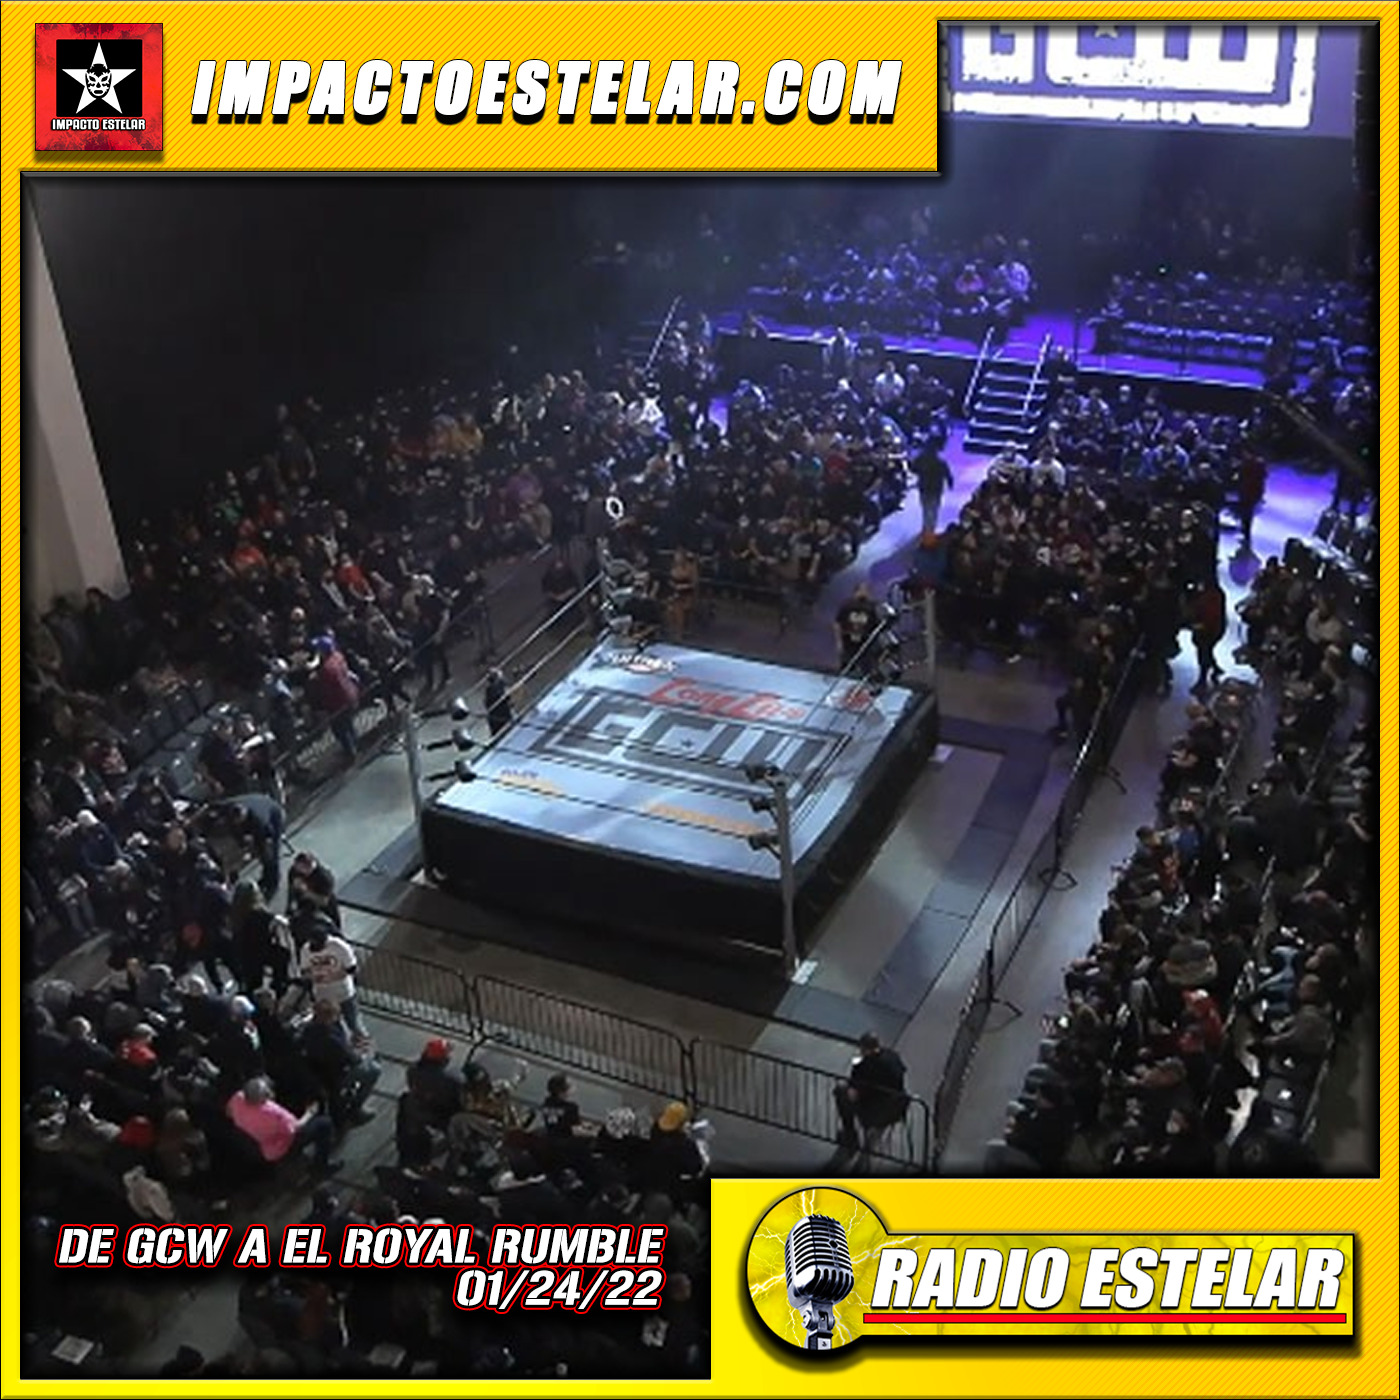 Radio Estelar 01/24/22 | De GCW Al Royal Rumble